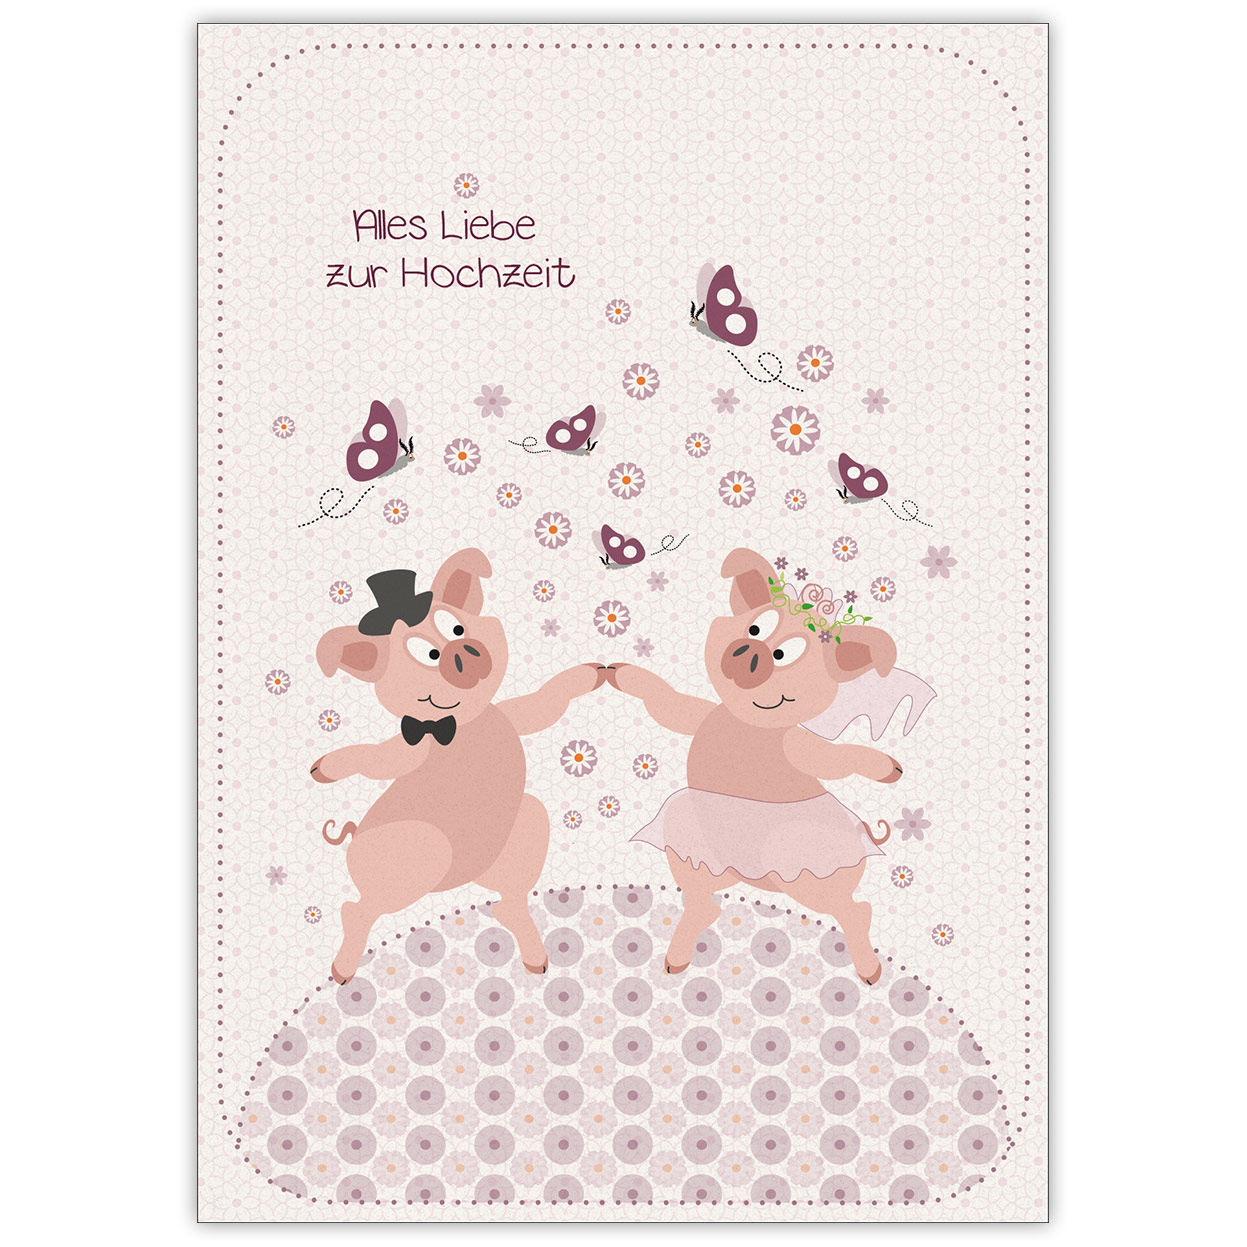 Tolle Hochzeitskarte mit fröhlichen Schweinchen: Alles Liebe zur Hochzeit